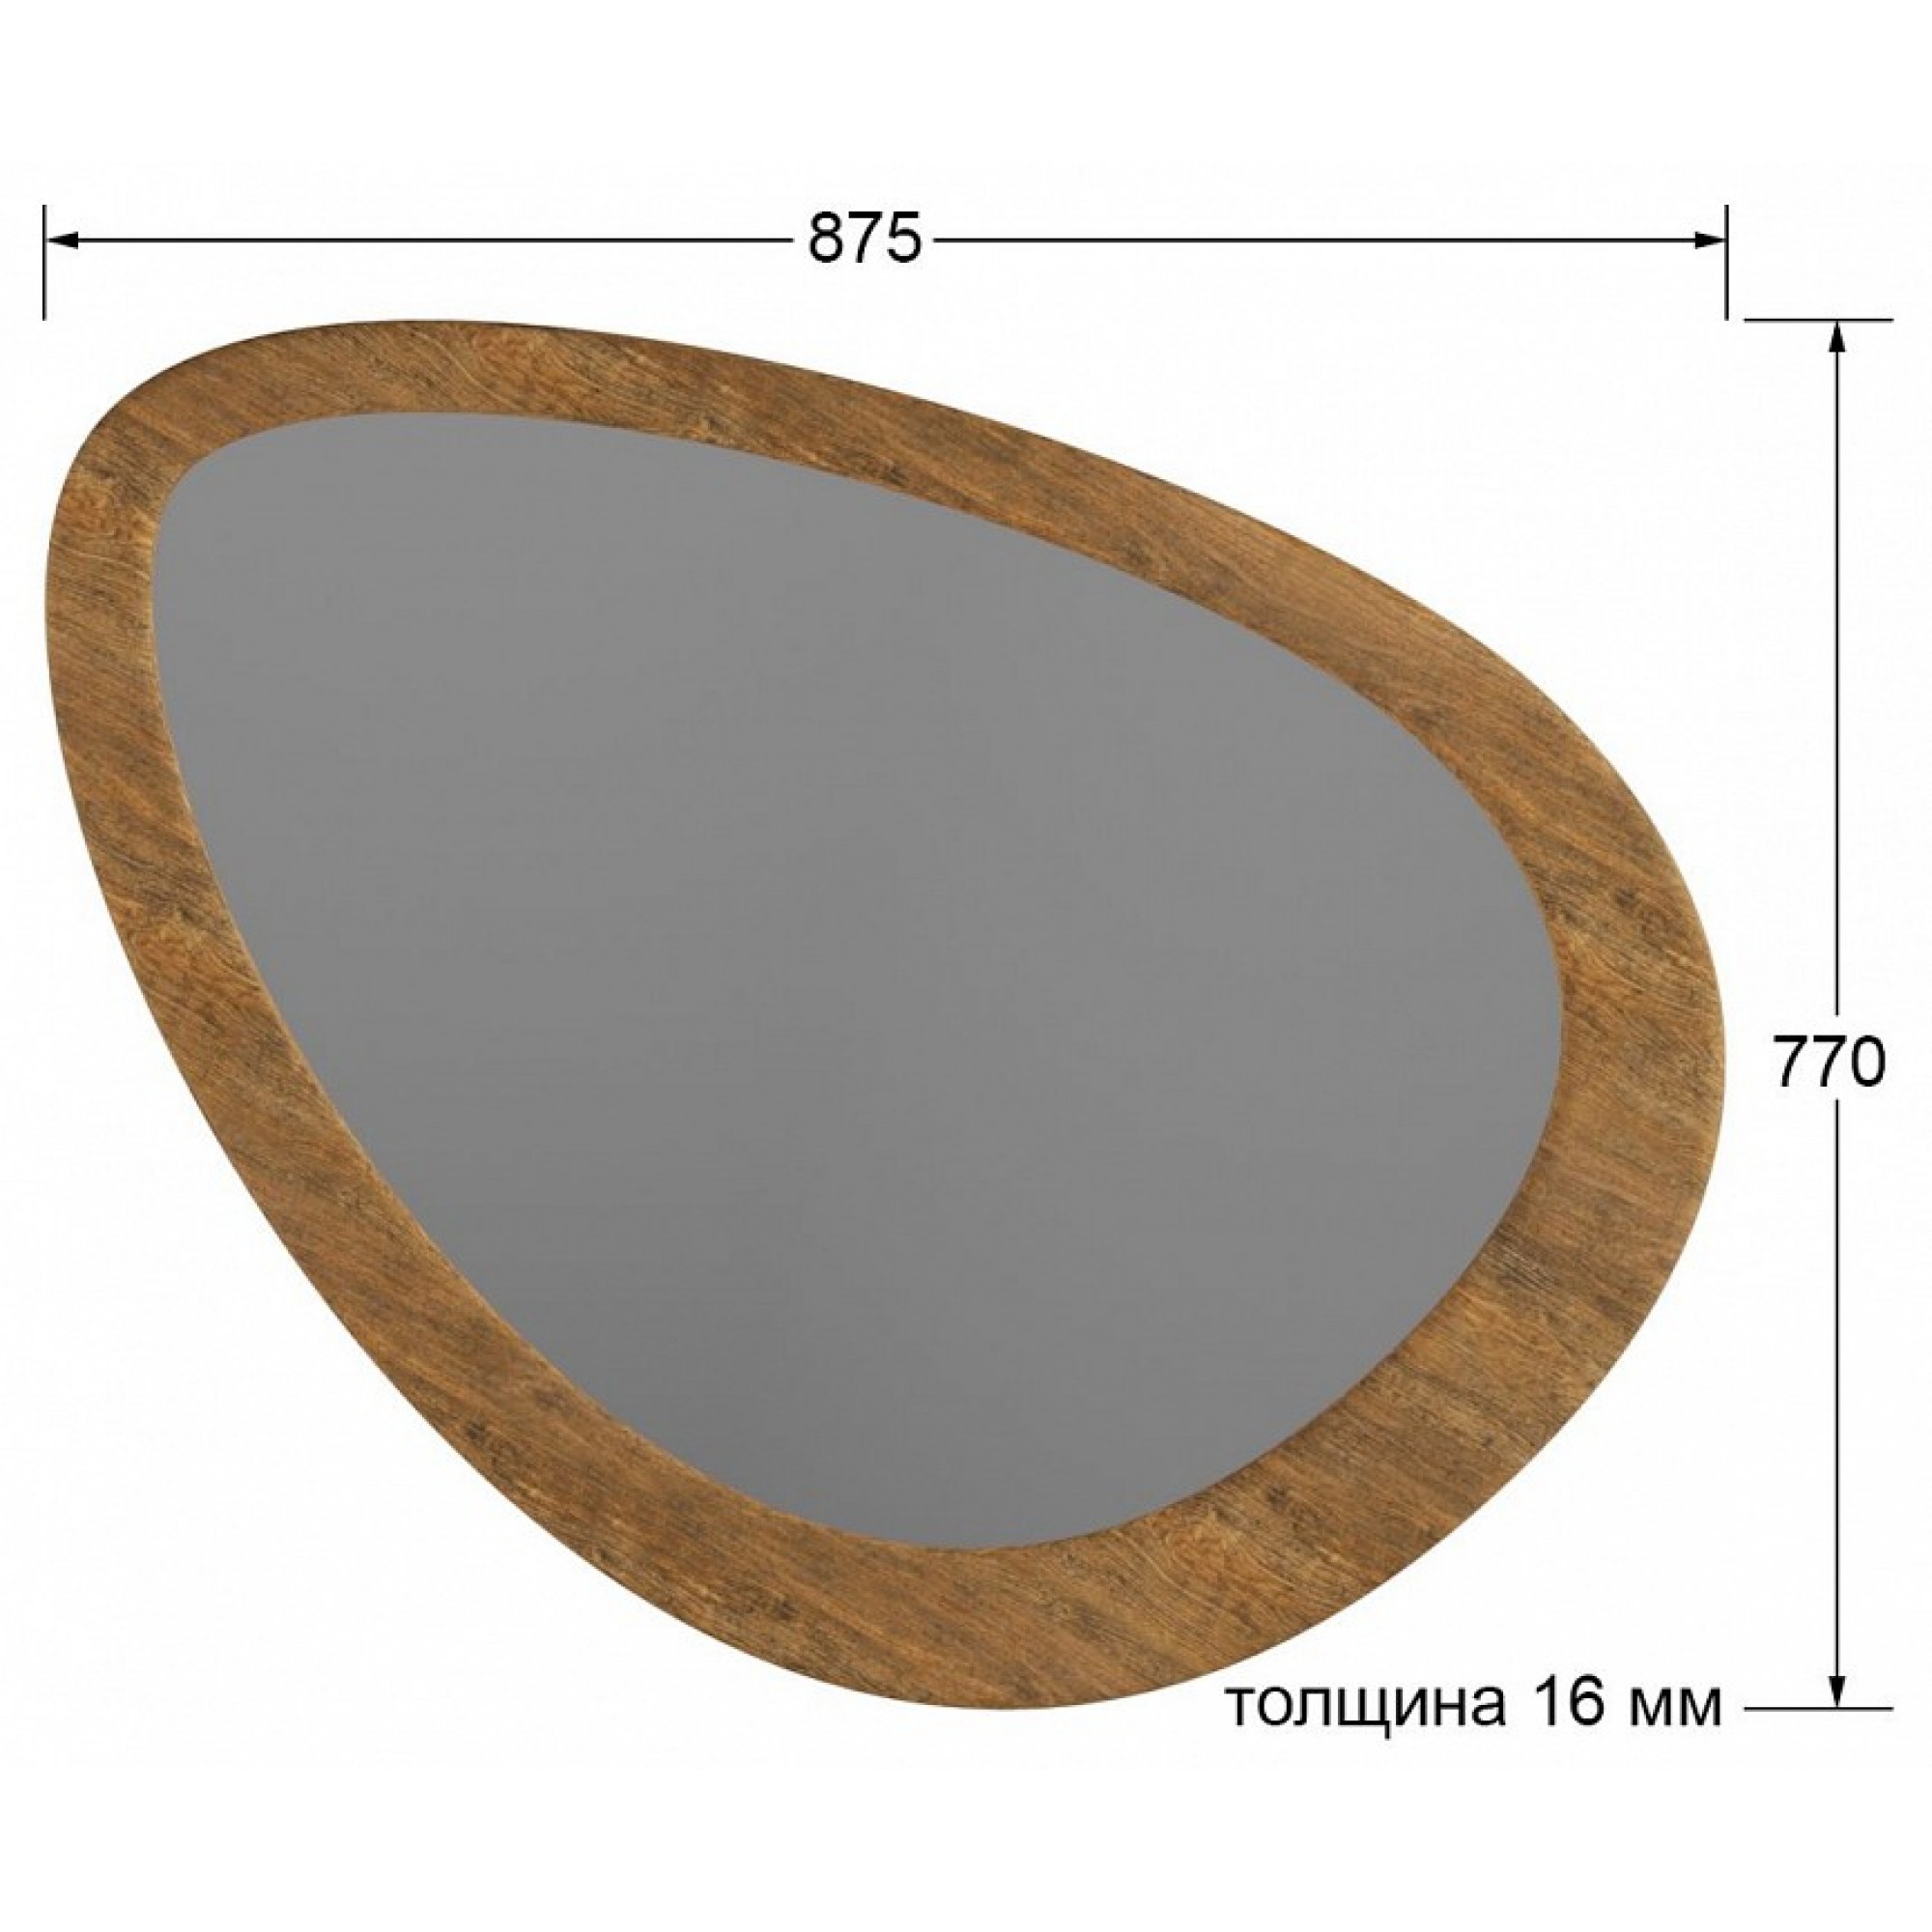 Зеркало настенное Телфорд вью древесина коричневая светлая дуб 875x770x16(KLF_9348732904)